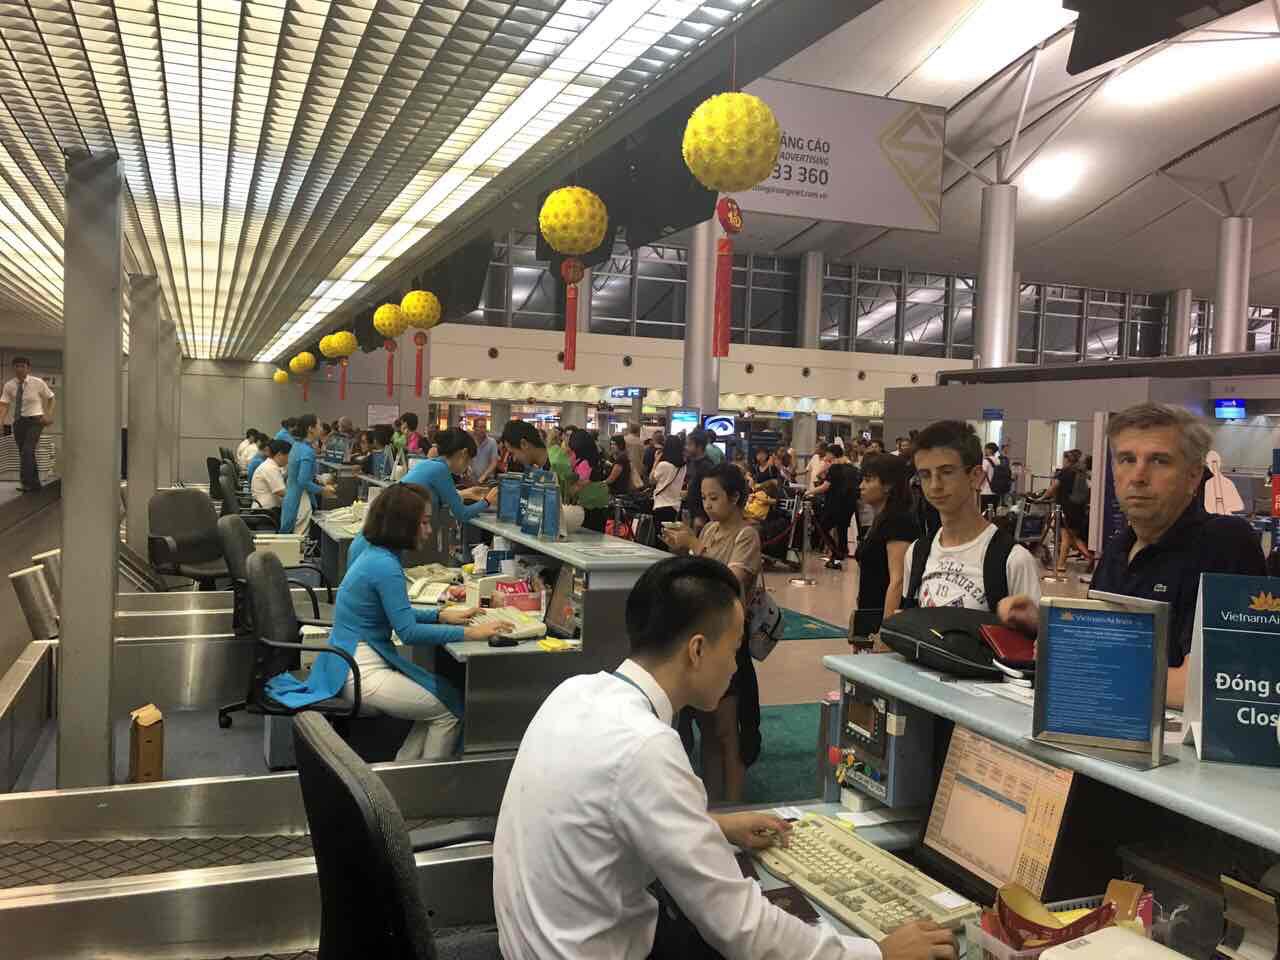  Trong 2 tháng đầu năm 2017, với trọng điểm phục vụ cao điểm Tết Đinh Dậu, chỉ số đúng giờ của Vietnam Airlines và các công ty thành viên tiến bộ vượt bậc với đạt 88%, tăng gần 10 điểm % so với năm 2016 trong bối cảnh hạ tầng quá tải, đặc biệt tại sân bay Tân Sơn Nhất.